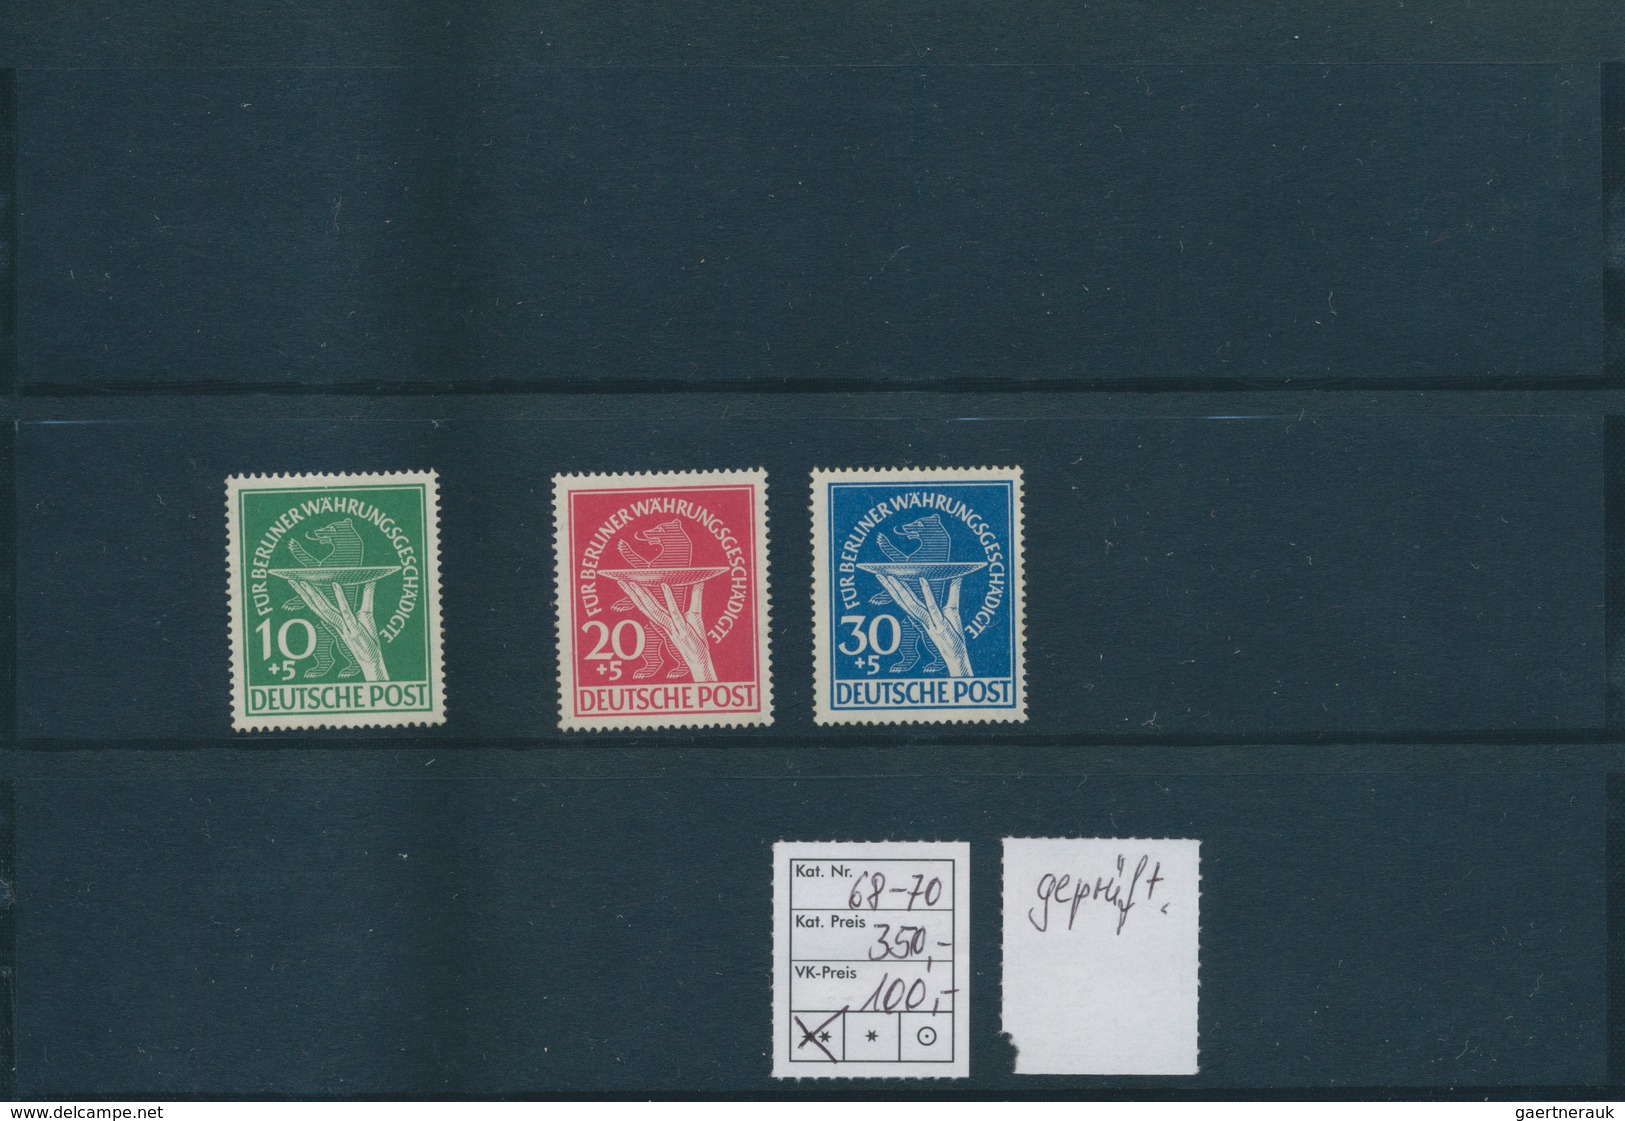 32484 Berlin: 1948/1950, Partie von besseren Ausgaben auf Steckkarten, dabei MiNr. 1/20 (2), 35/41, 42/60